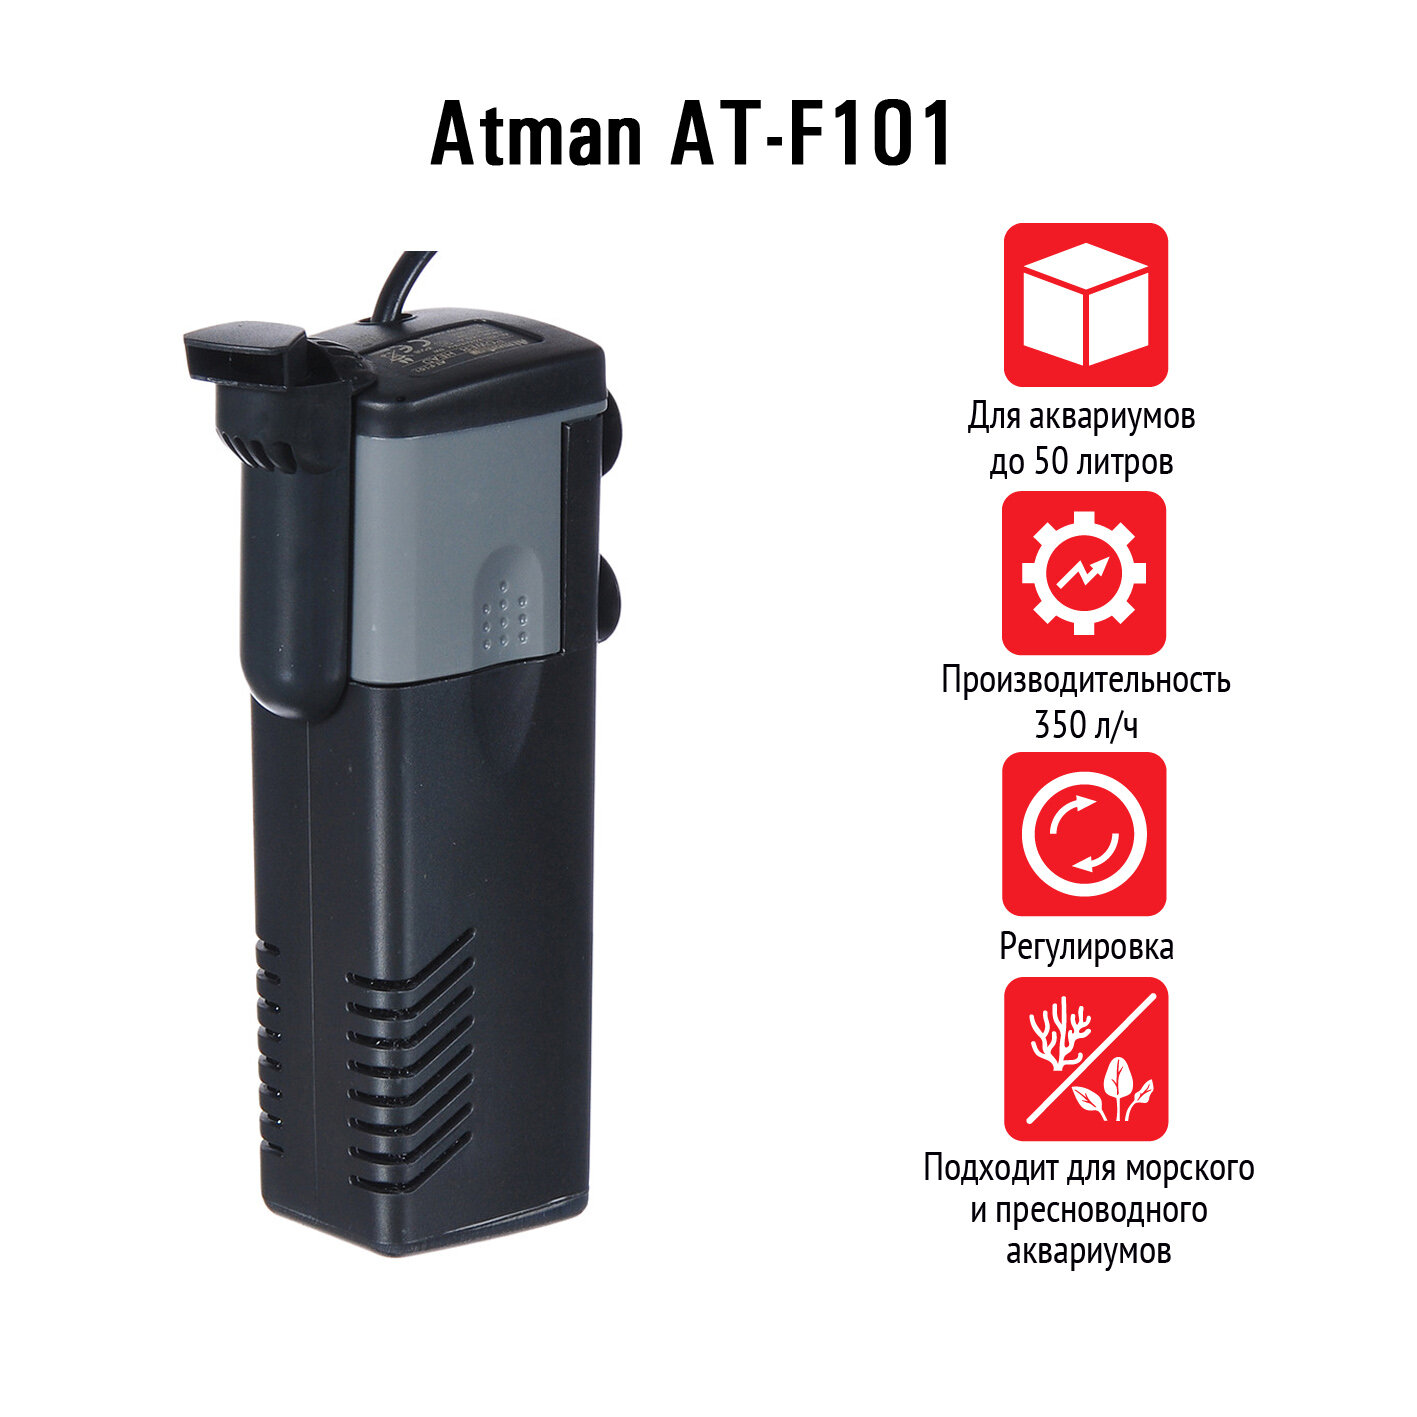 Atman Фильтр внутренний AT-F101, 350 л/ч, 5W - фото №2